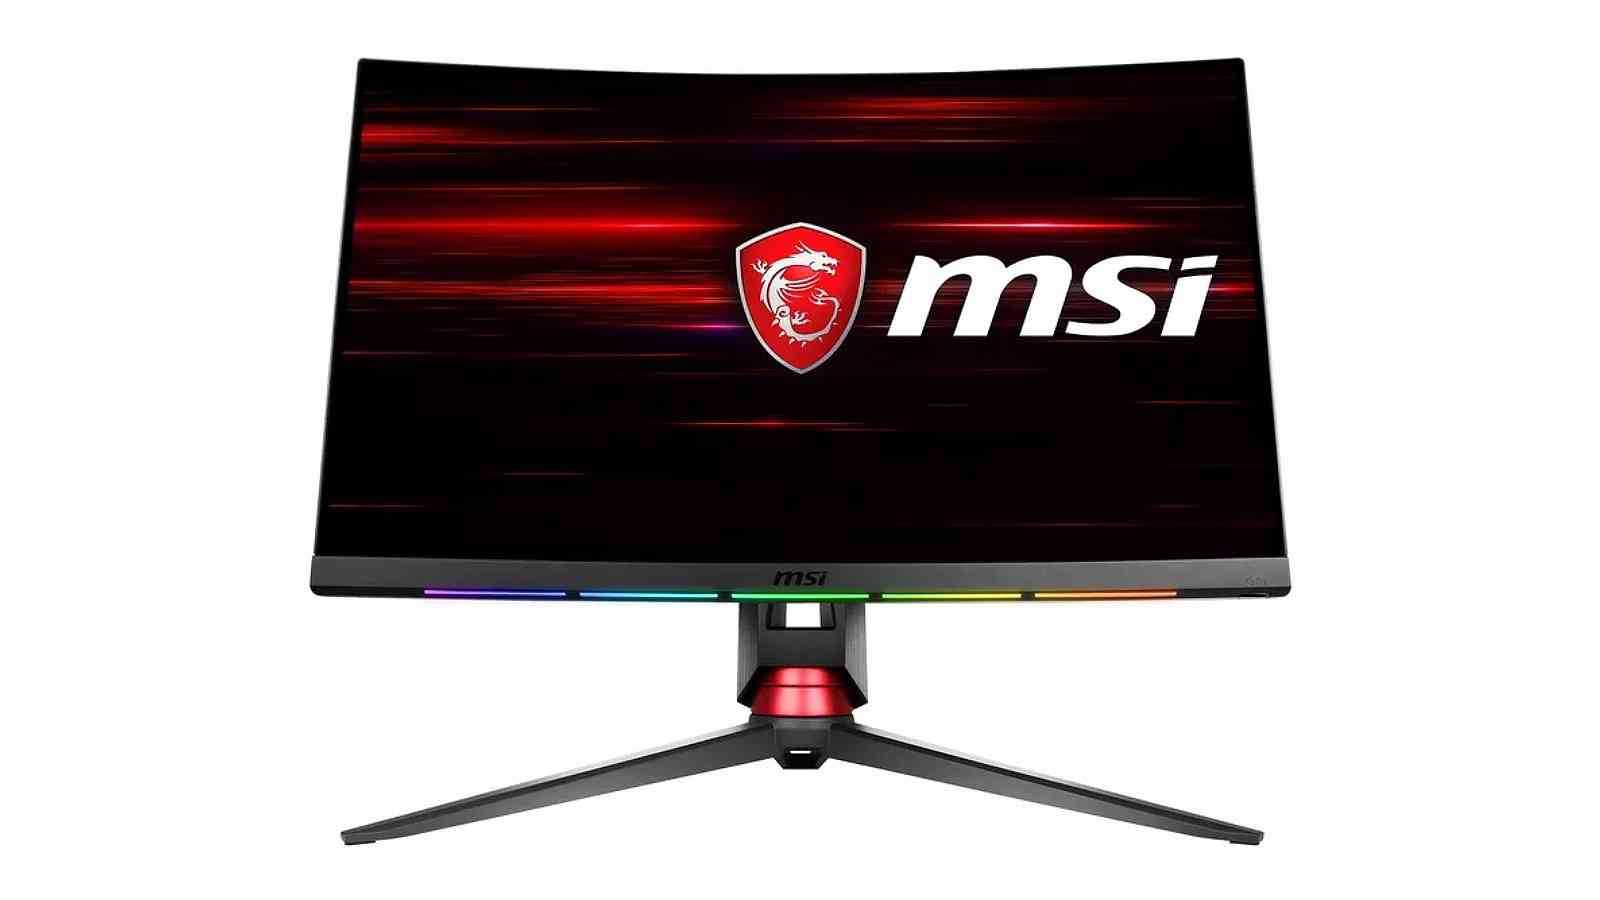 Nové MSI monitory pomocí RGB zobrazí notifikace